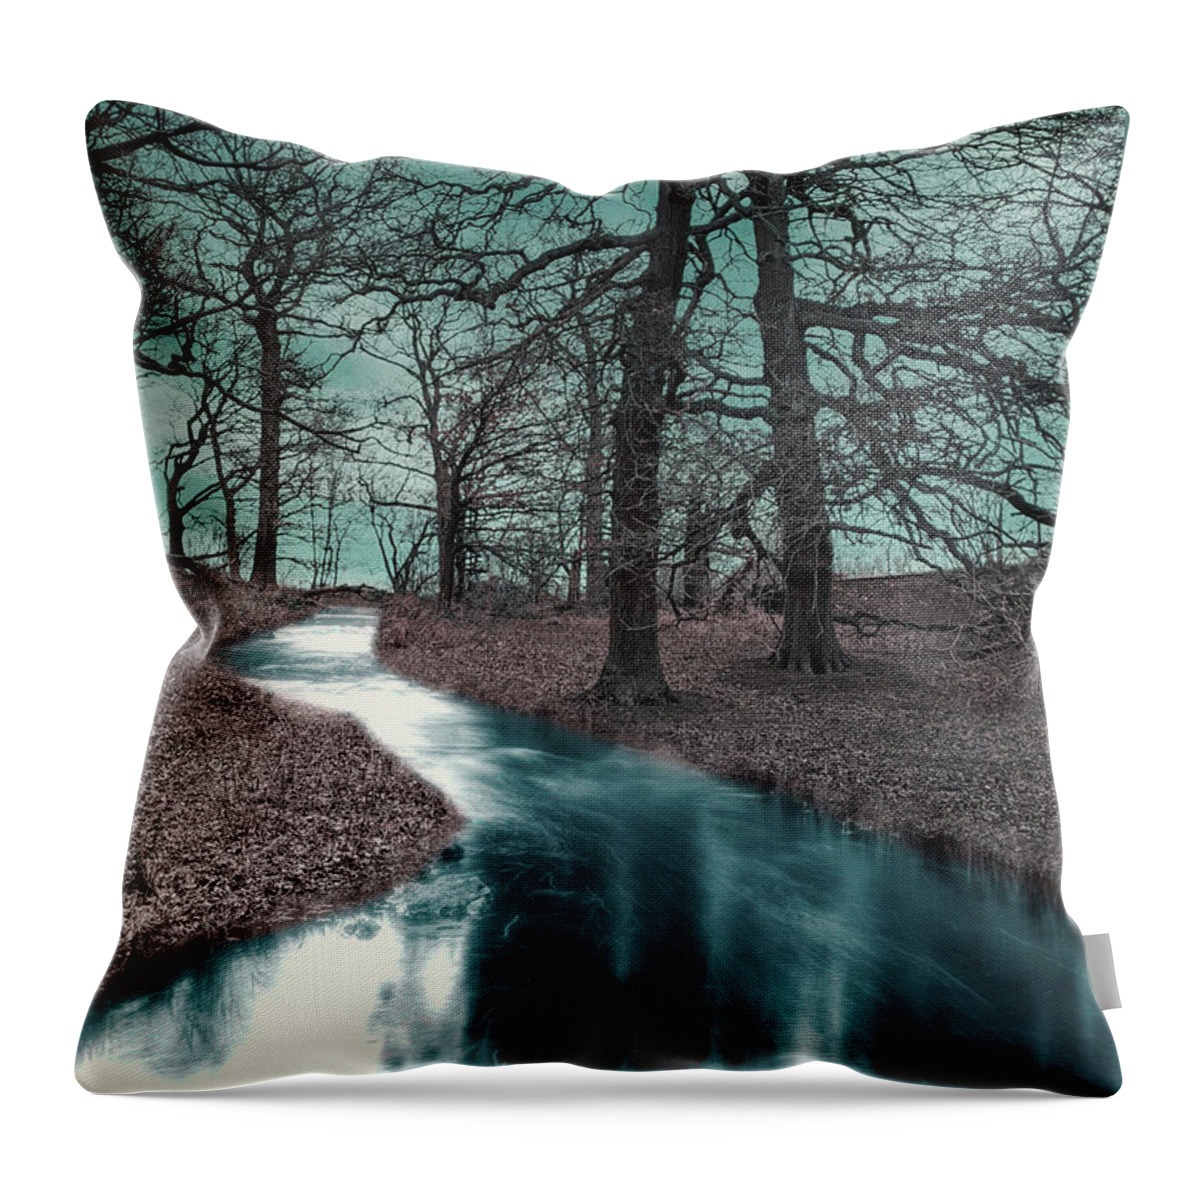 Ghostlands Throw Pillow featuring the digital art Ghostlands by Jason Fink